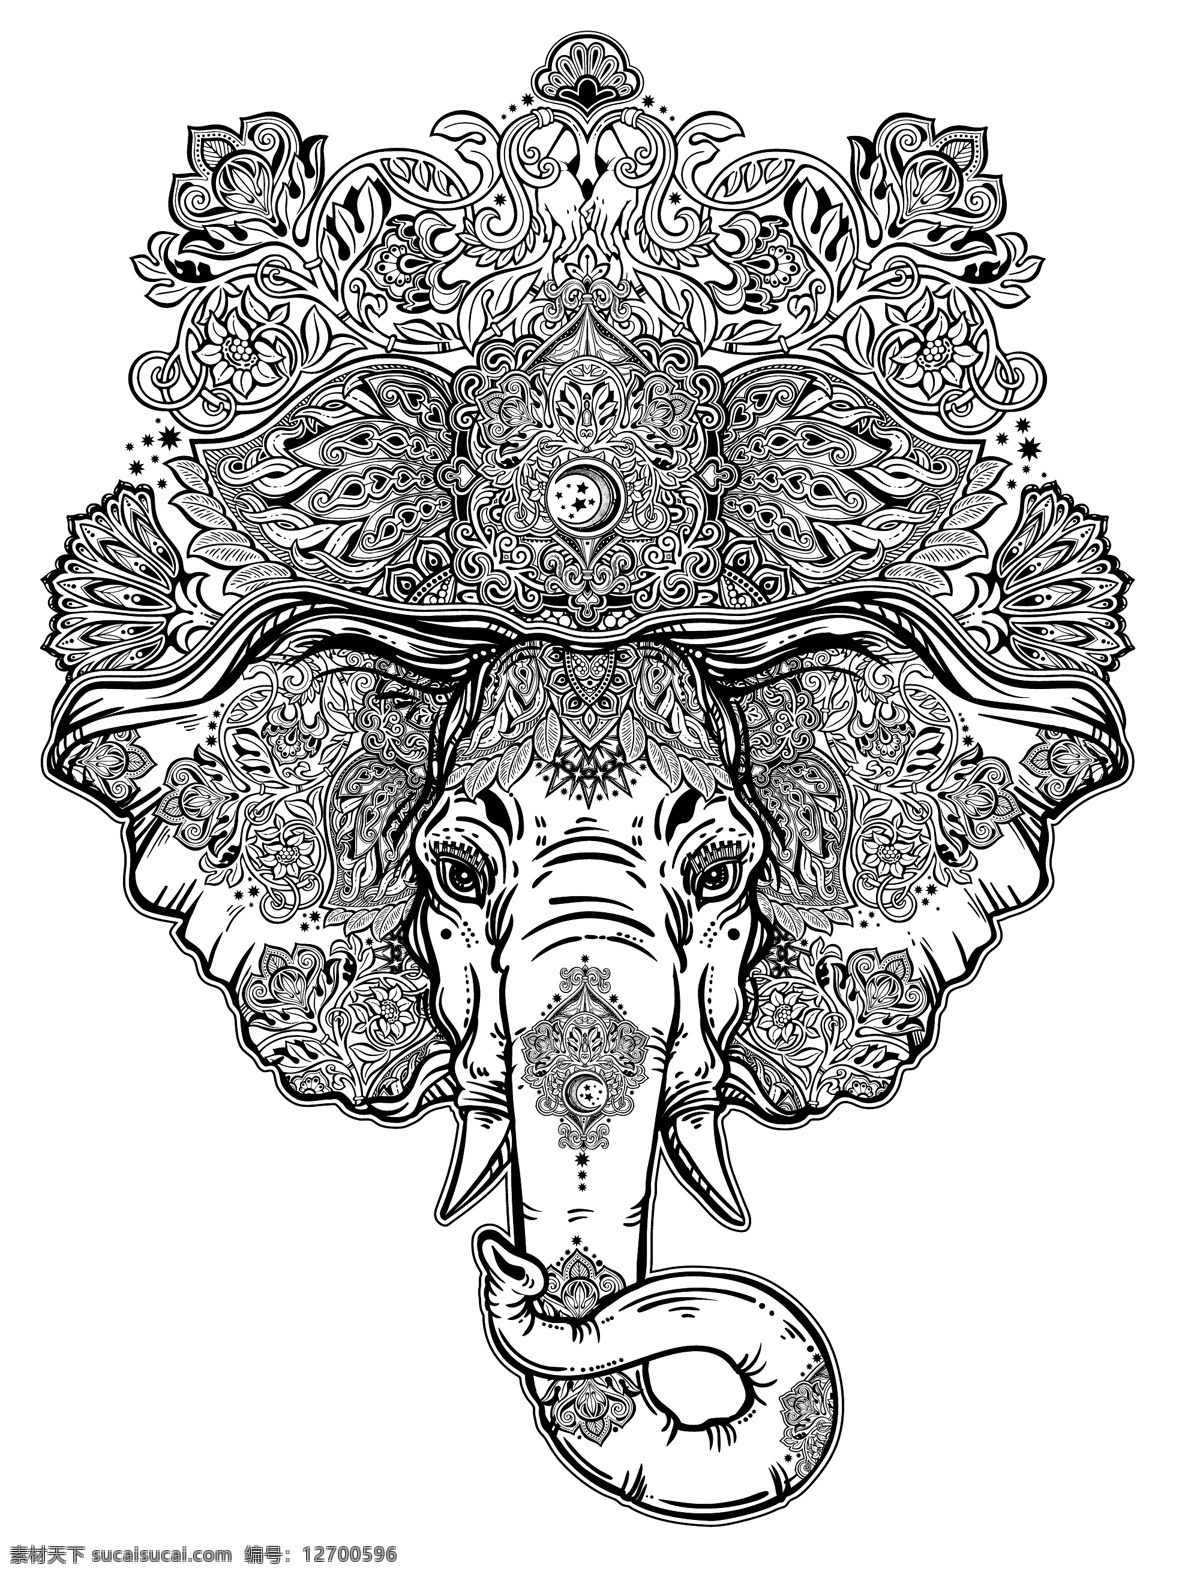 手绘 复杂 花纹 大象 头 矢量 象鼻 动物 象牙 黑白